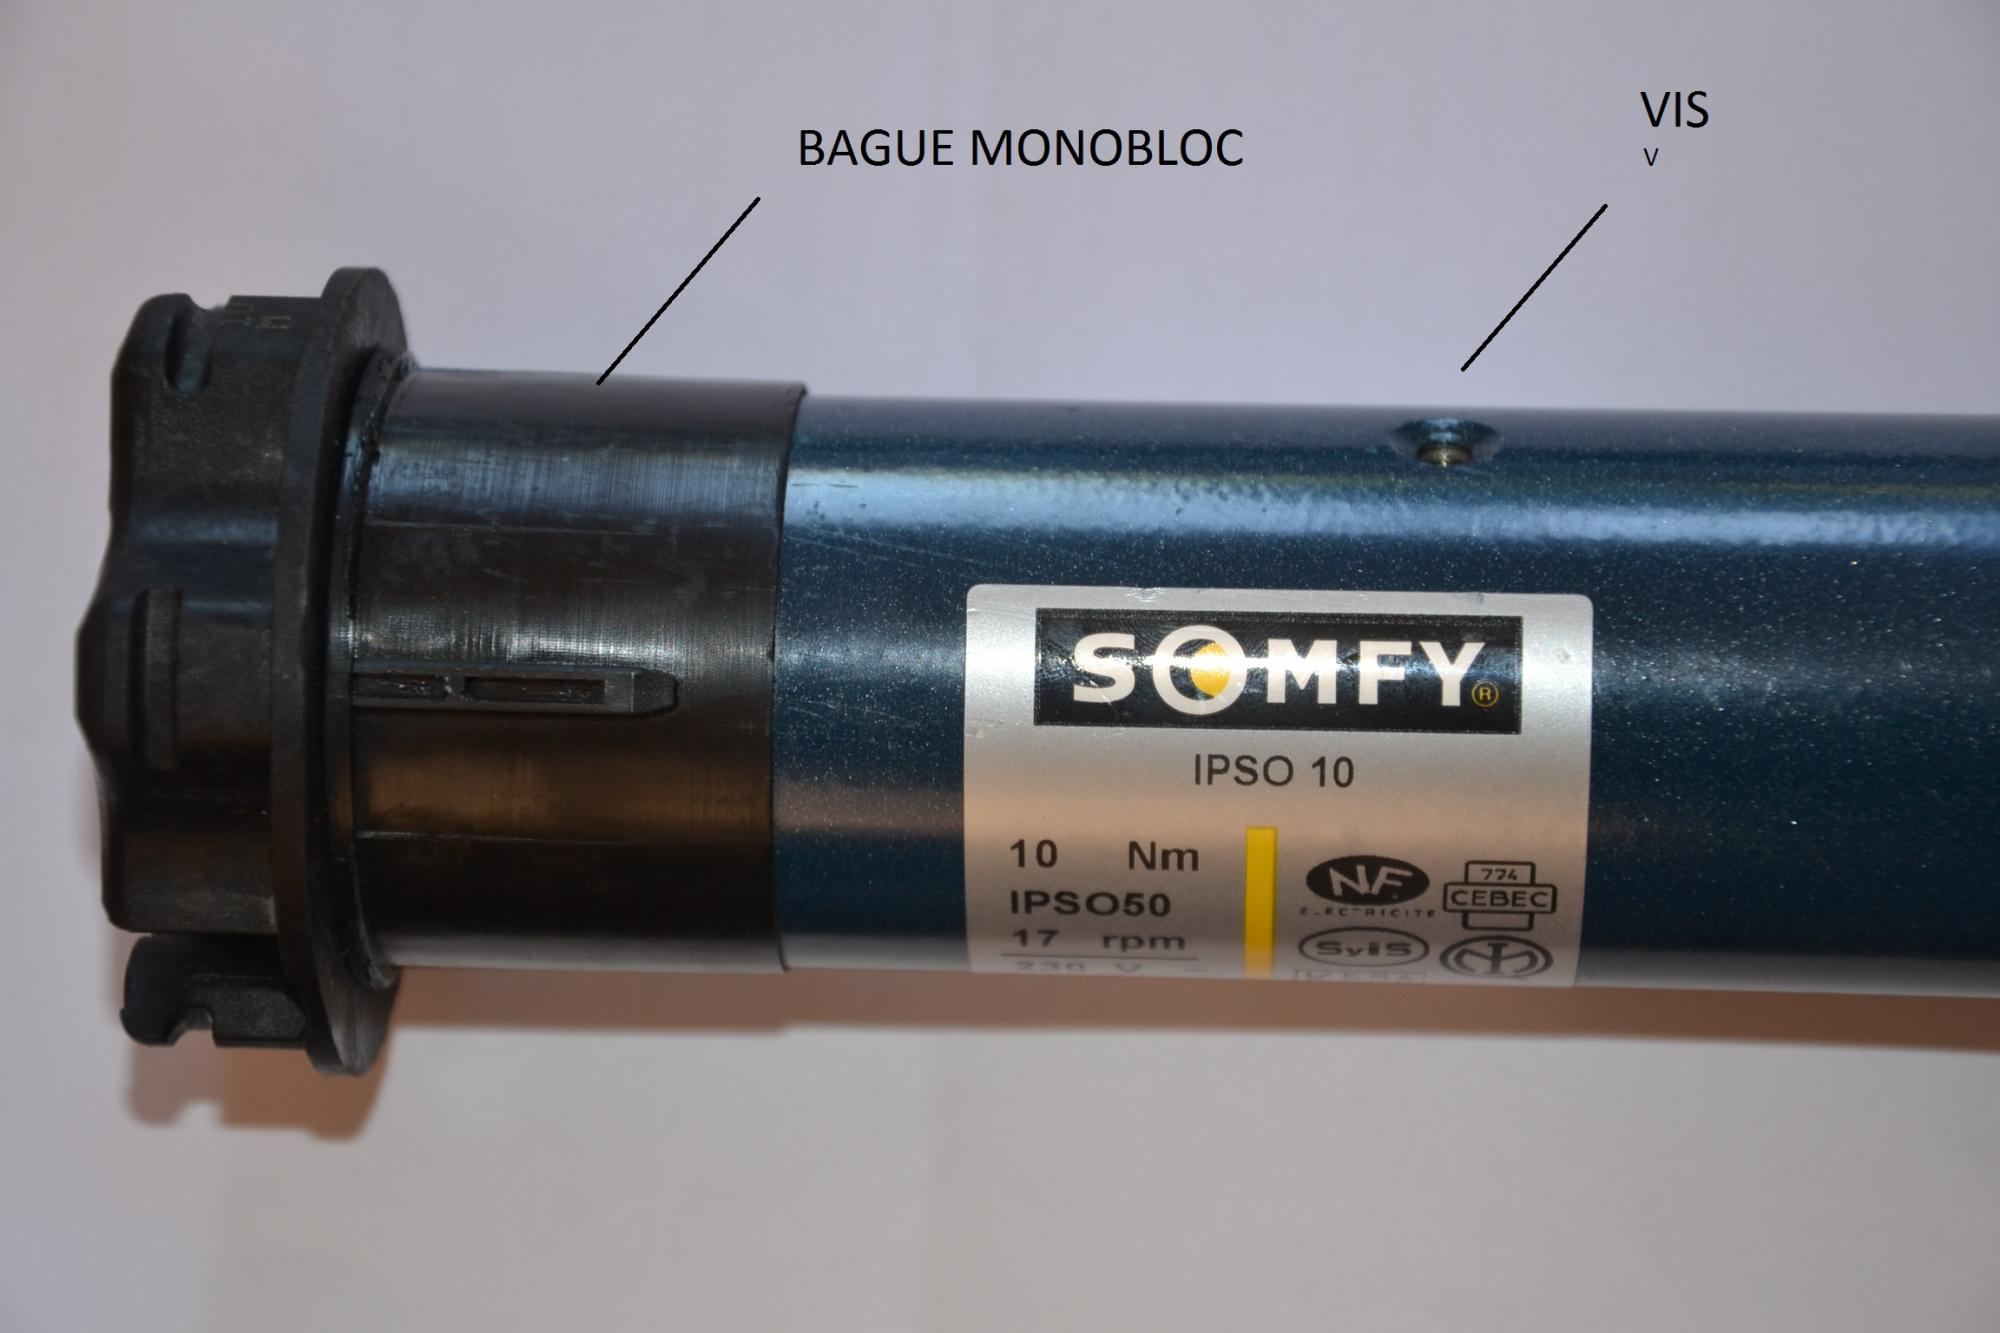 Blanc] Démontage moteur volet roulant SOMFY IPSO 10